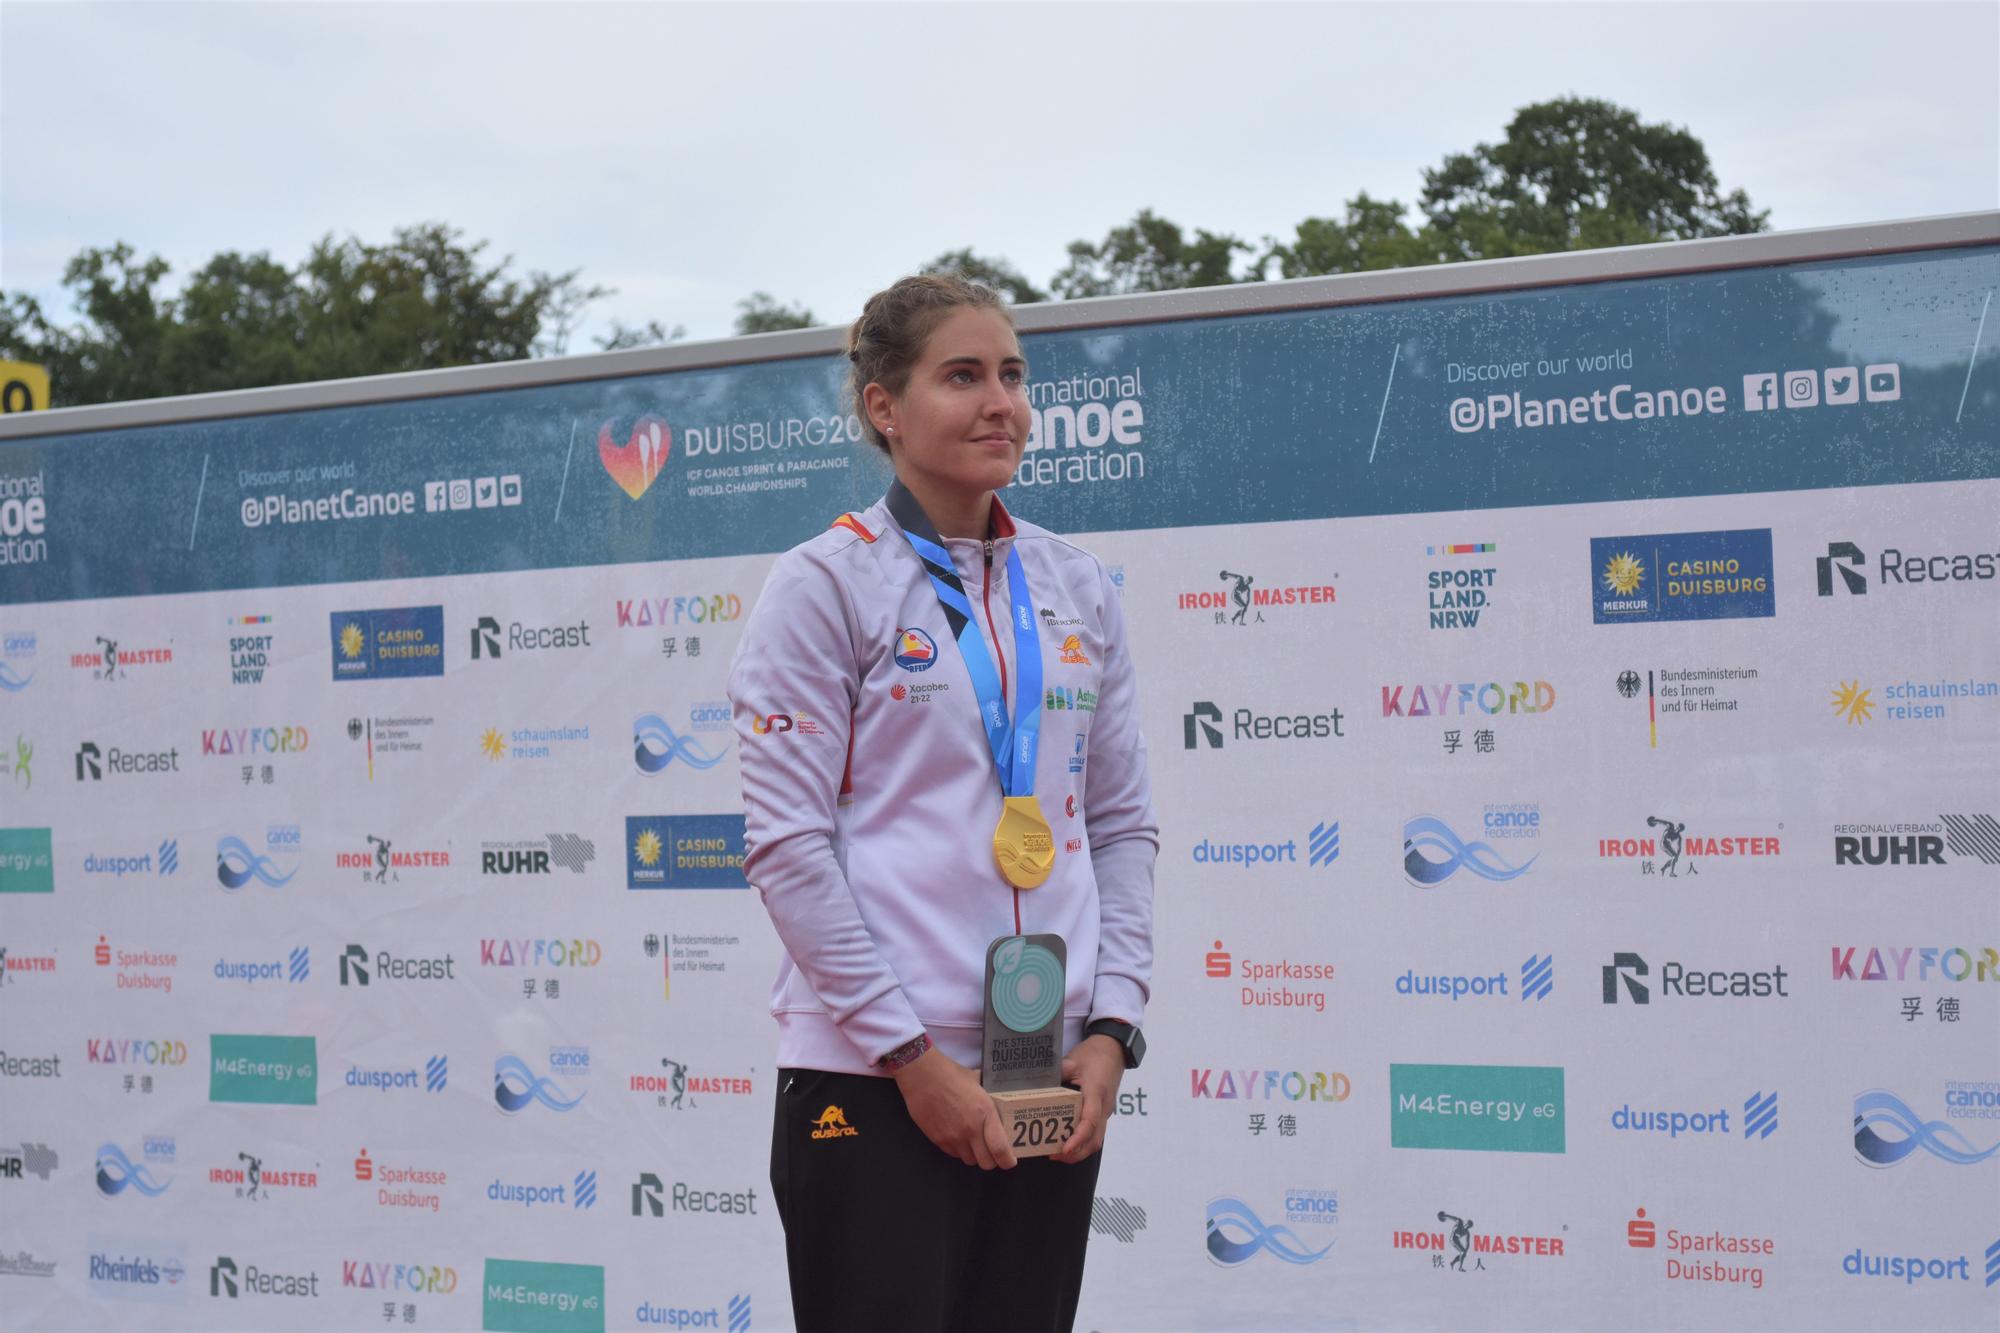 GALERÍA | La extremeña Estefanía Fernández, campeona del mundo en K1 5.000